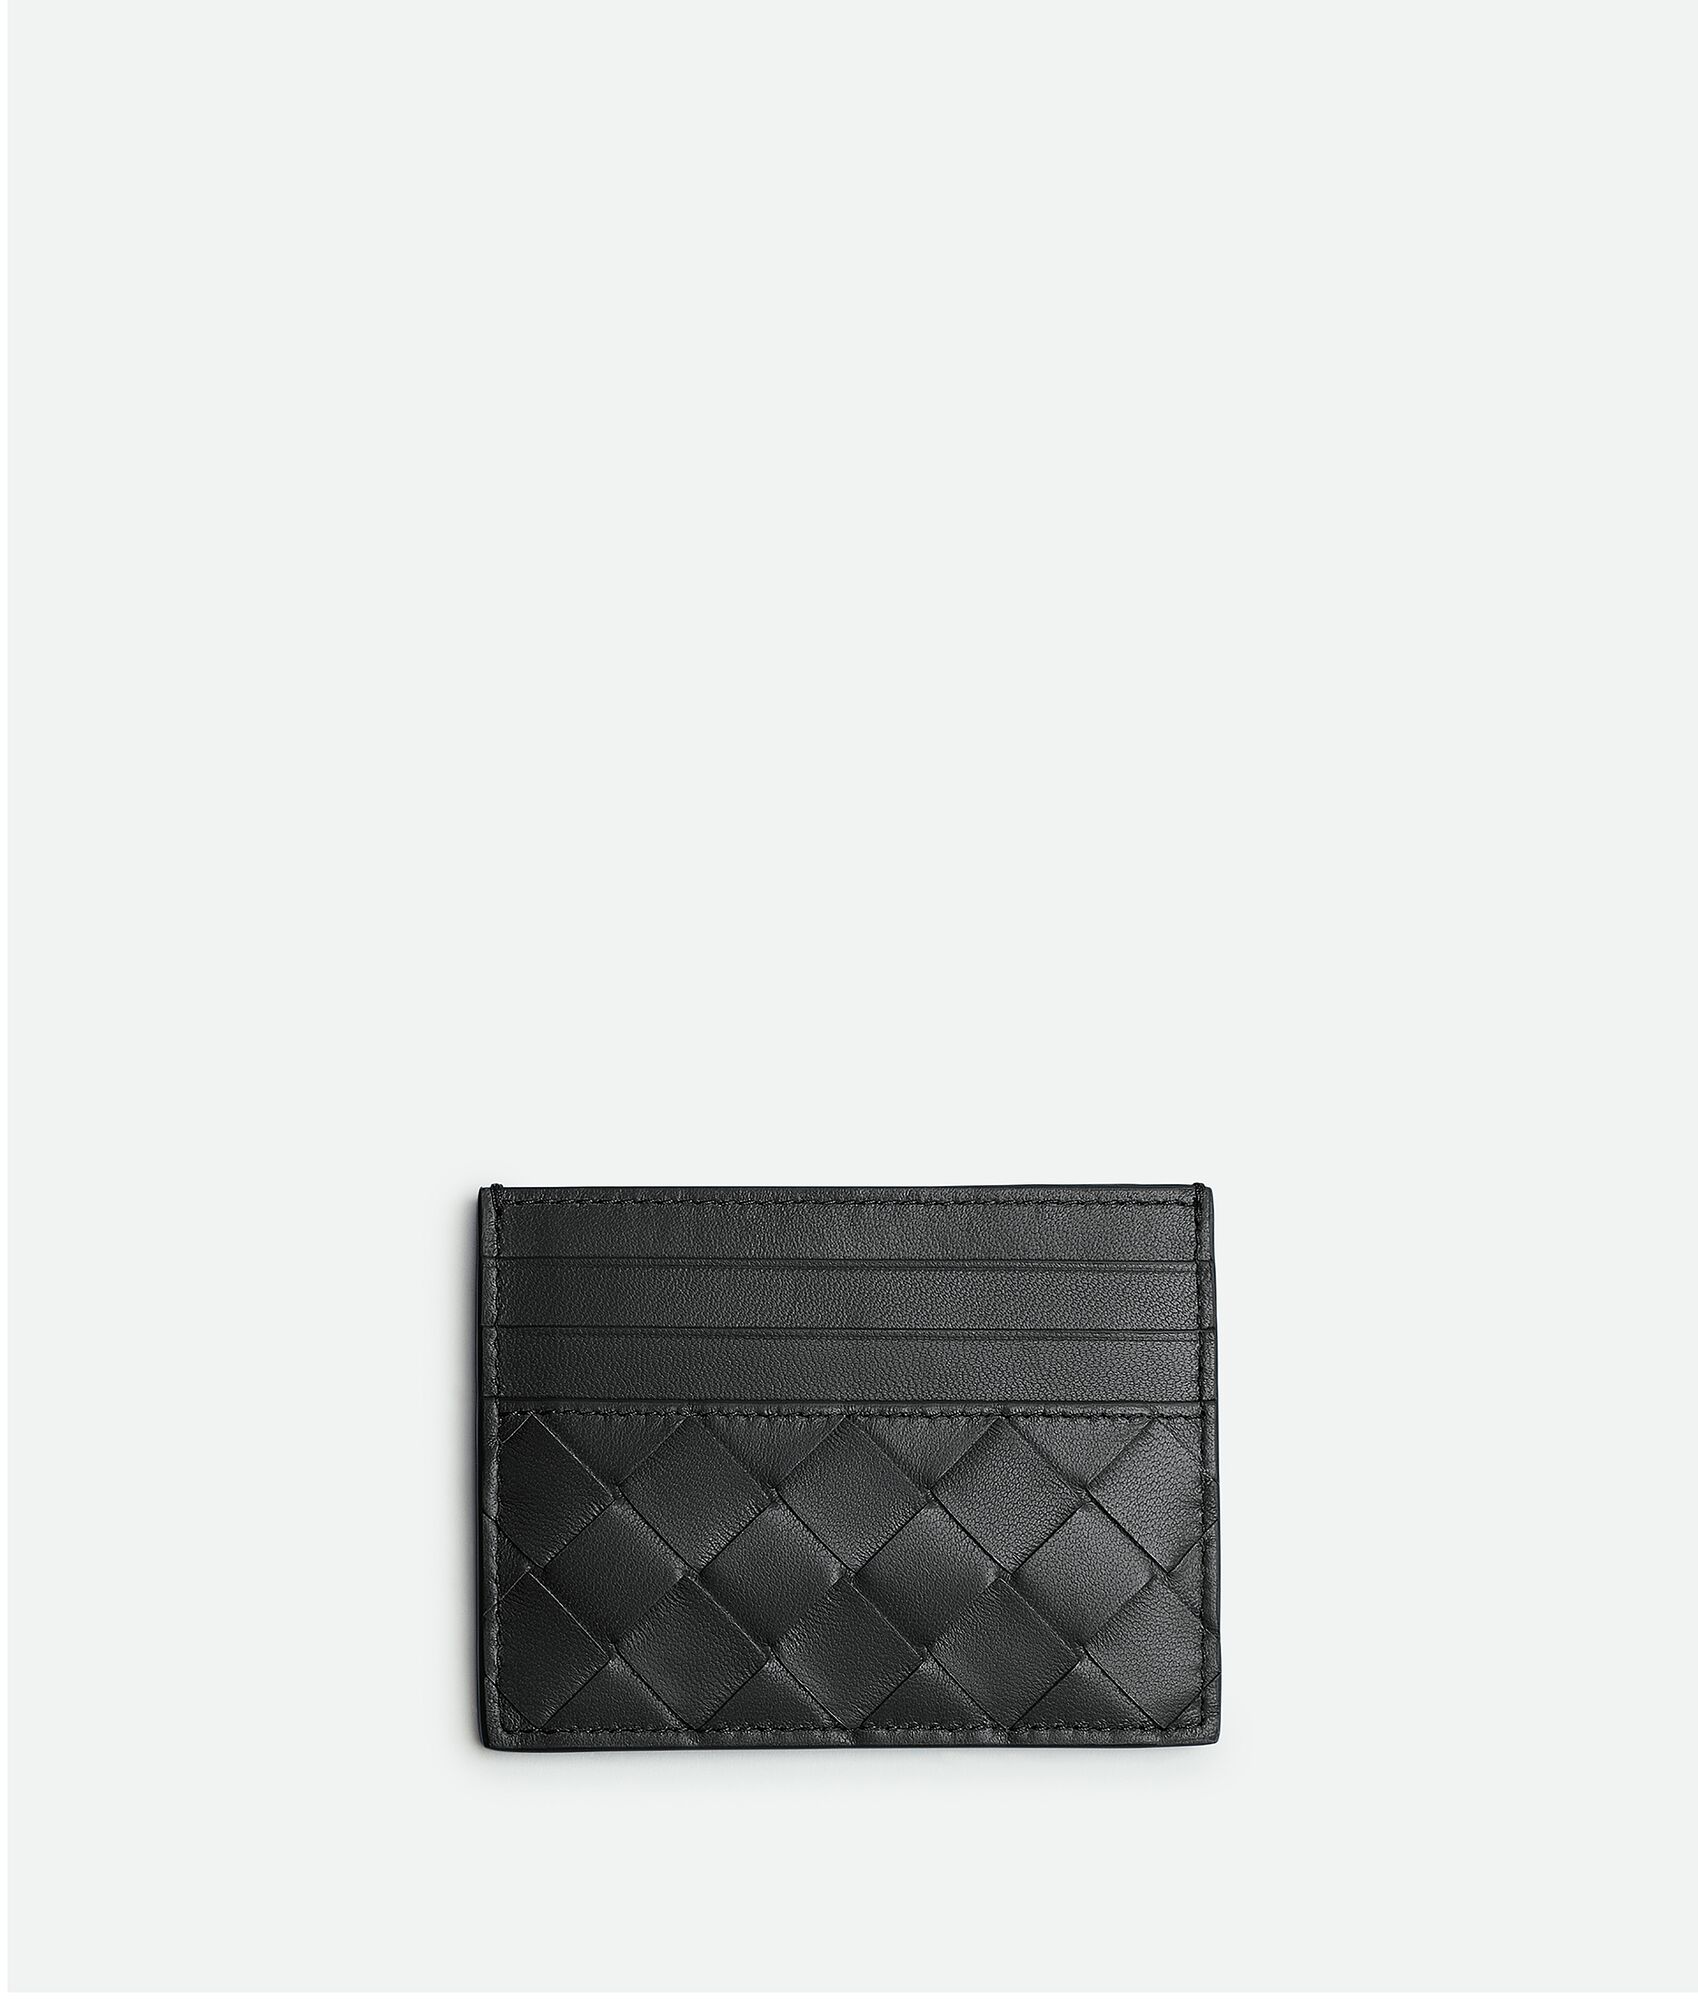 Bottega Veneta® Women's Zipped Card Case in Black. Shop online now.